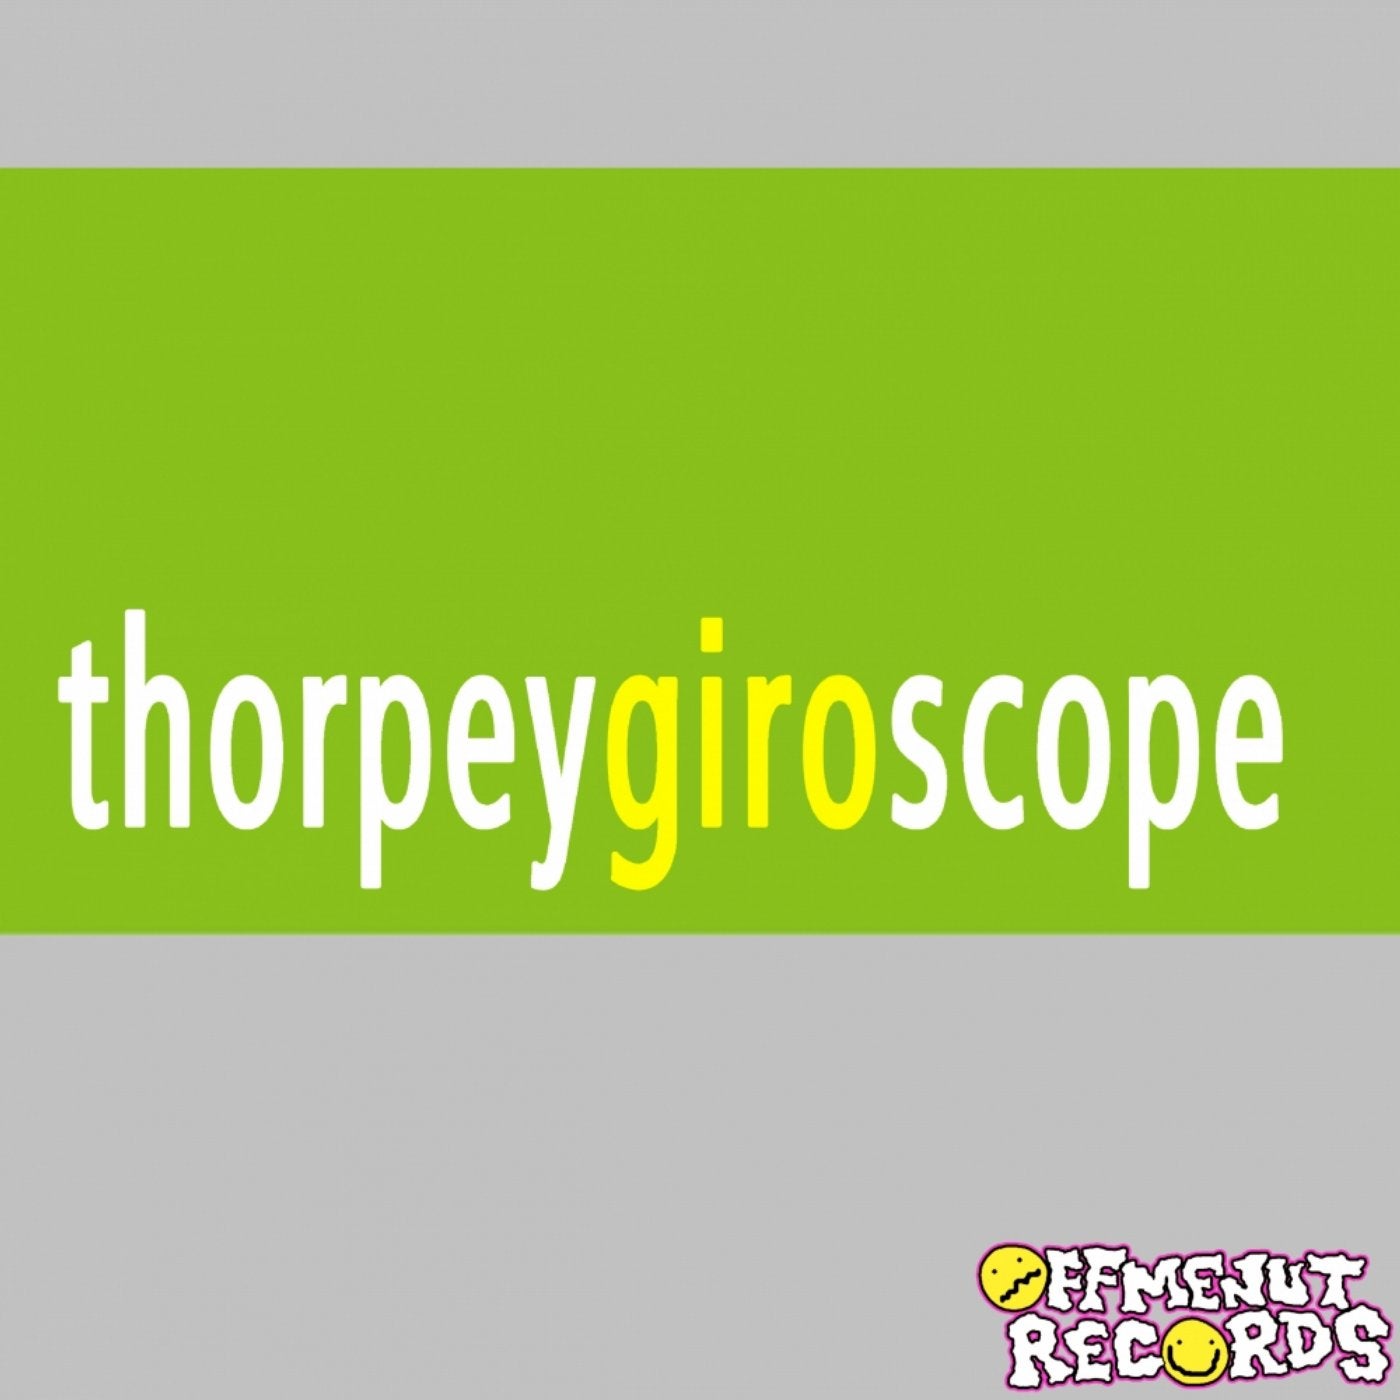 Giroscope